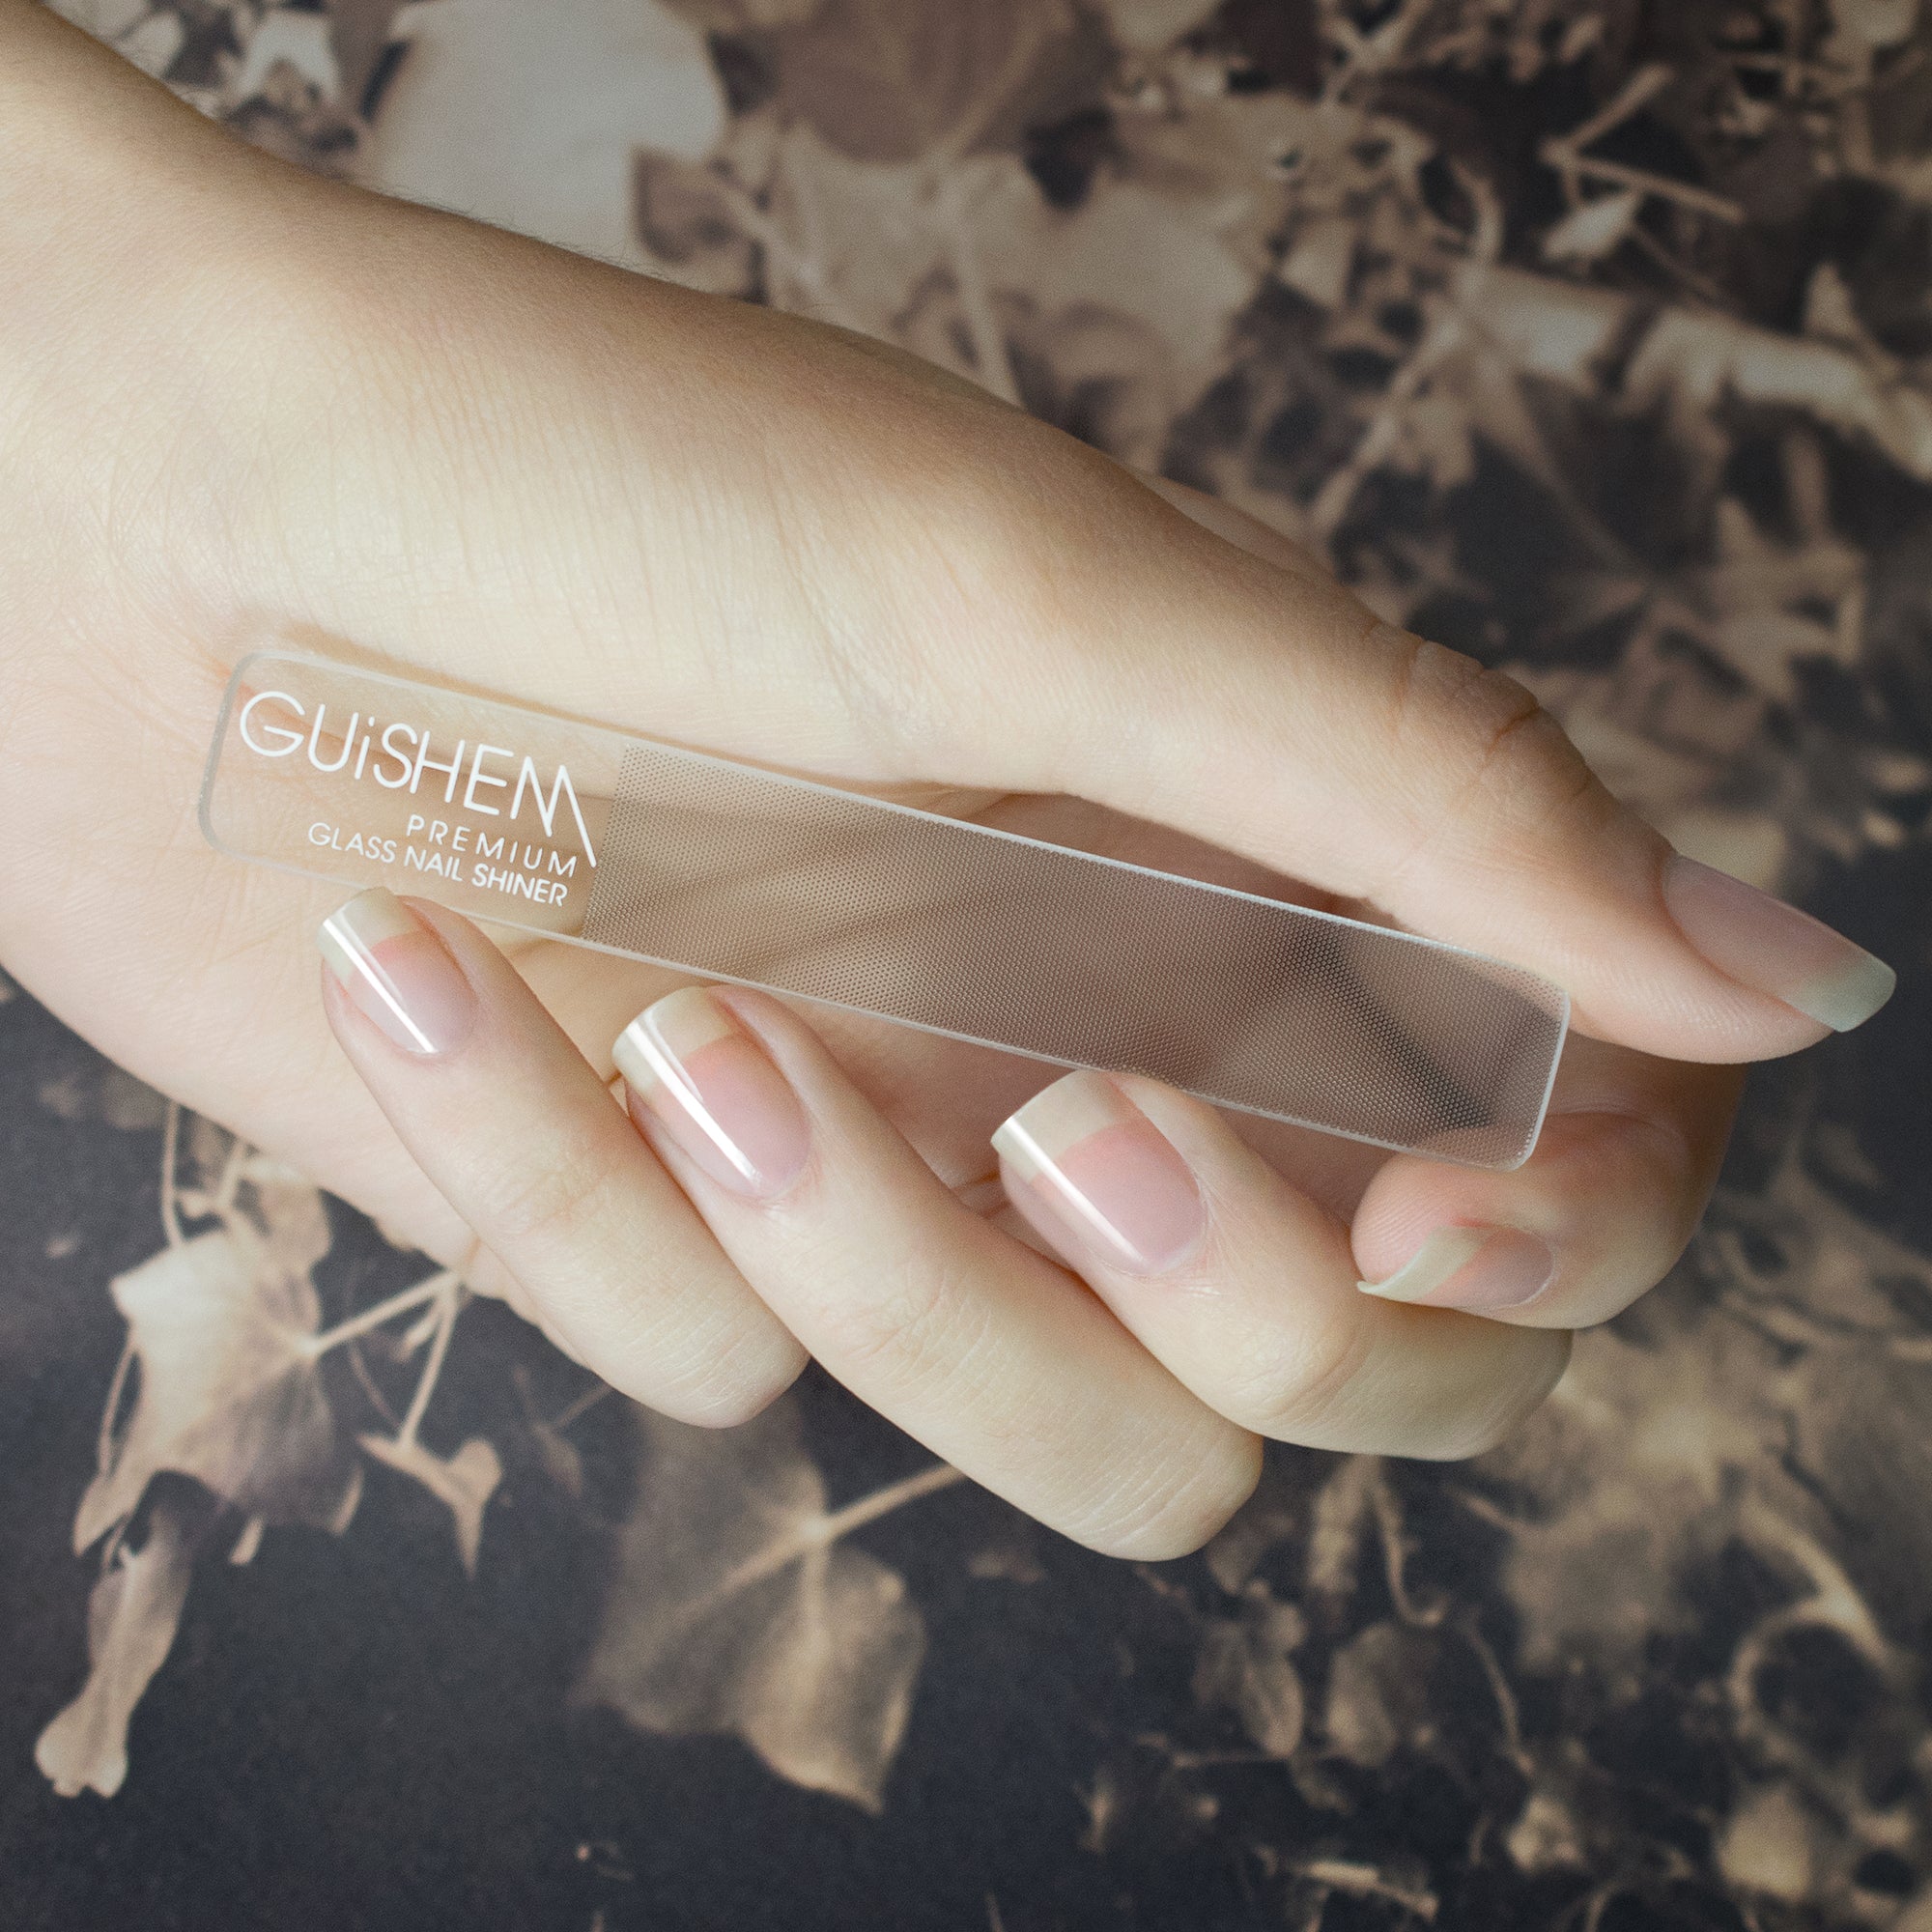 GUiSHEM Perfect Manicure - Glass Shiner